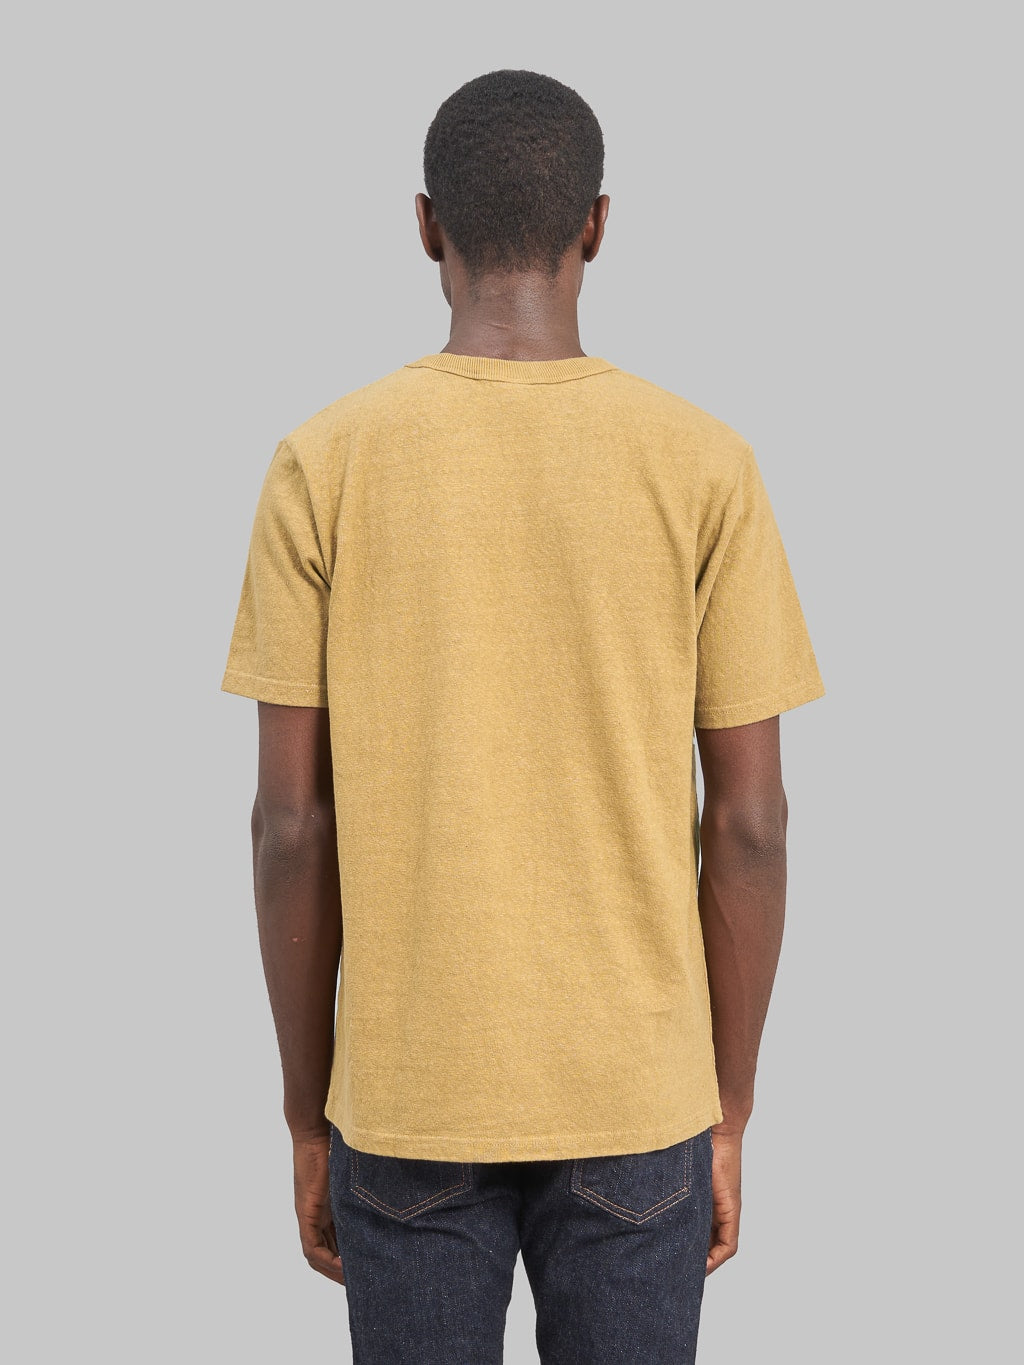 UES N8 Slub Nep Short Sleeve TShirt yellow model back fit